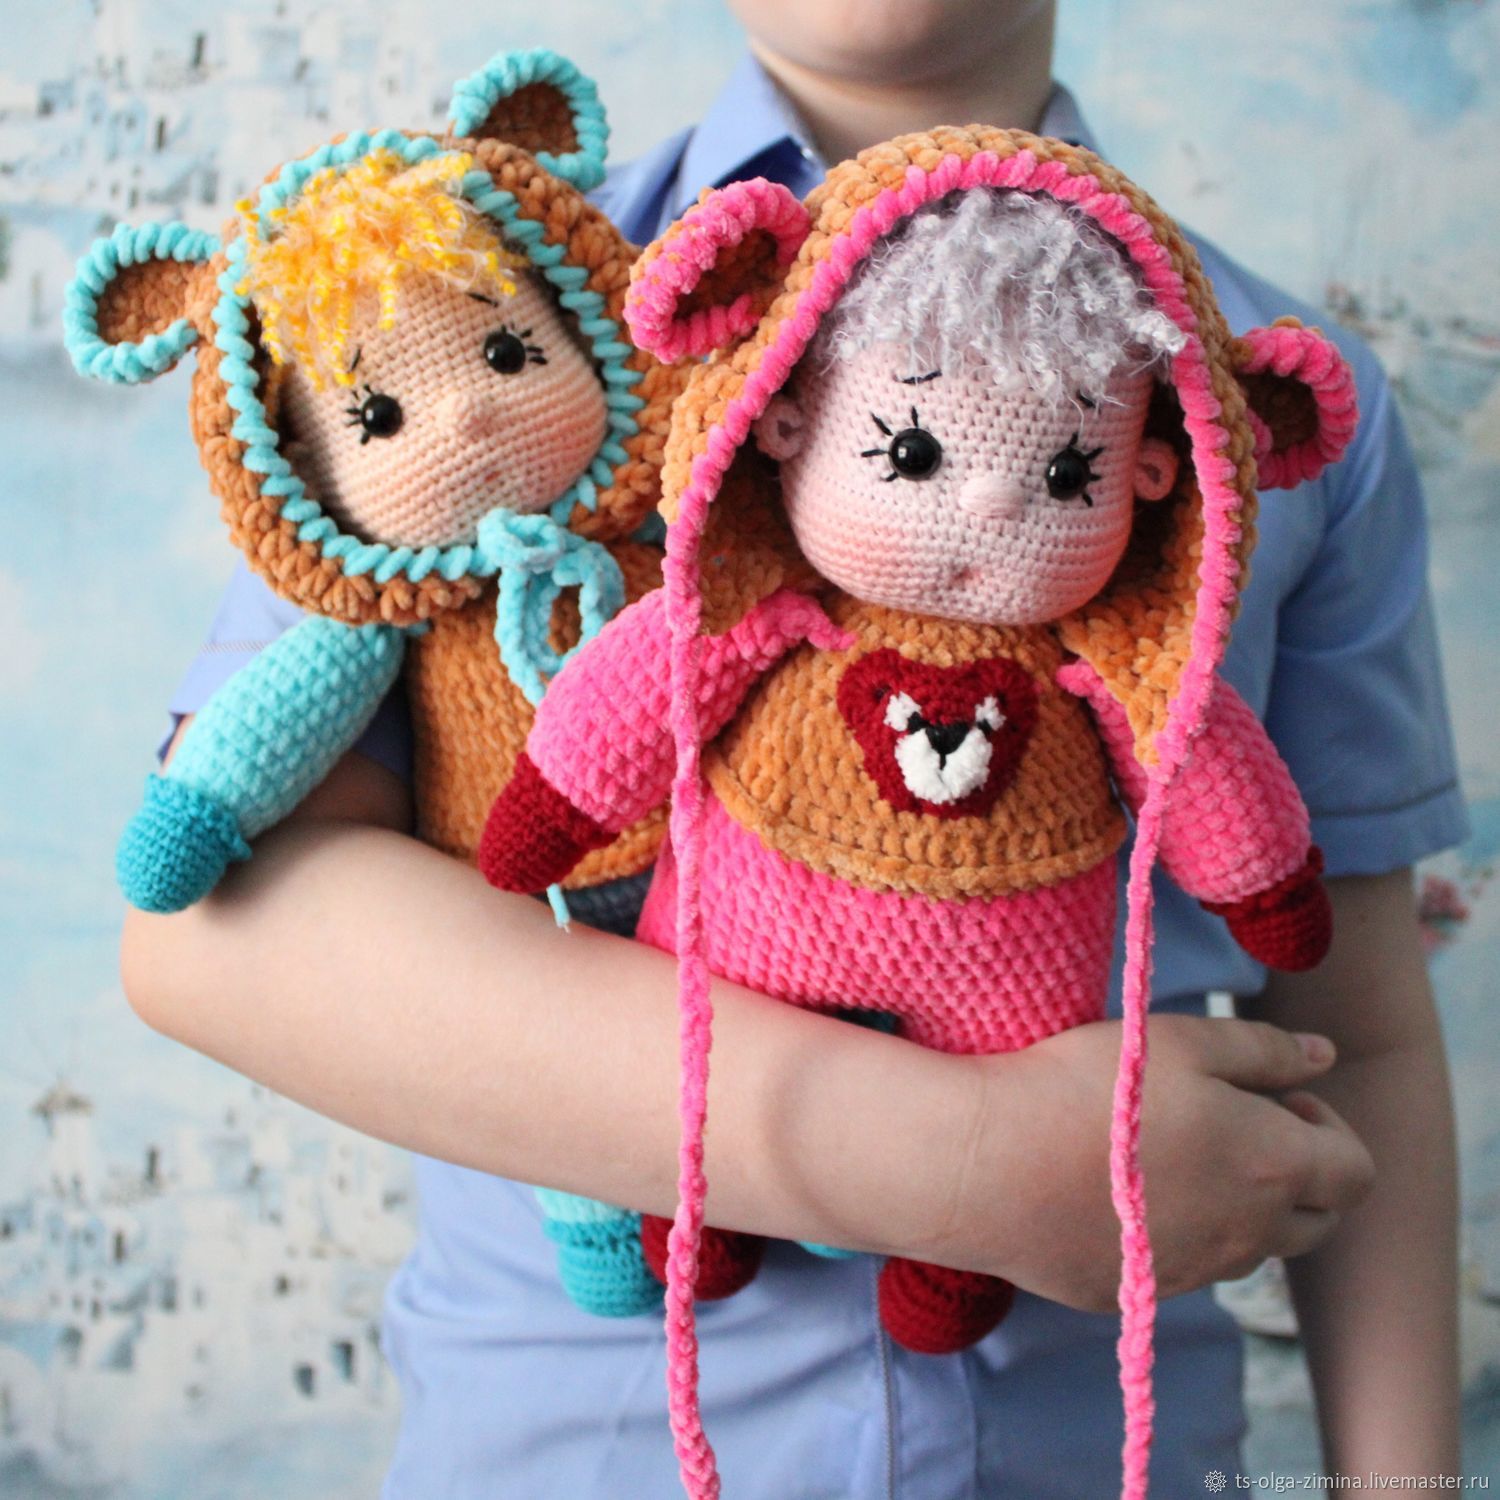 Рукоделие. Куклы из колготок, пластики. Вязание. | ВКонтакте